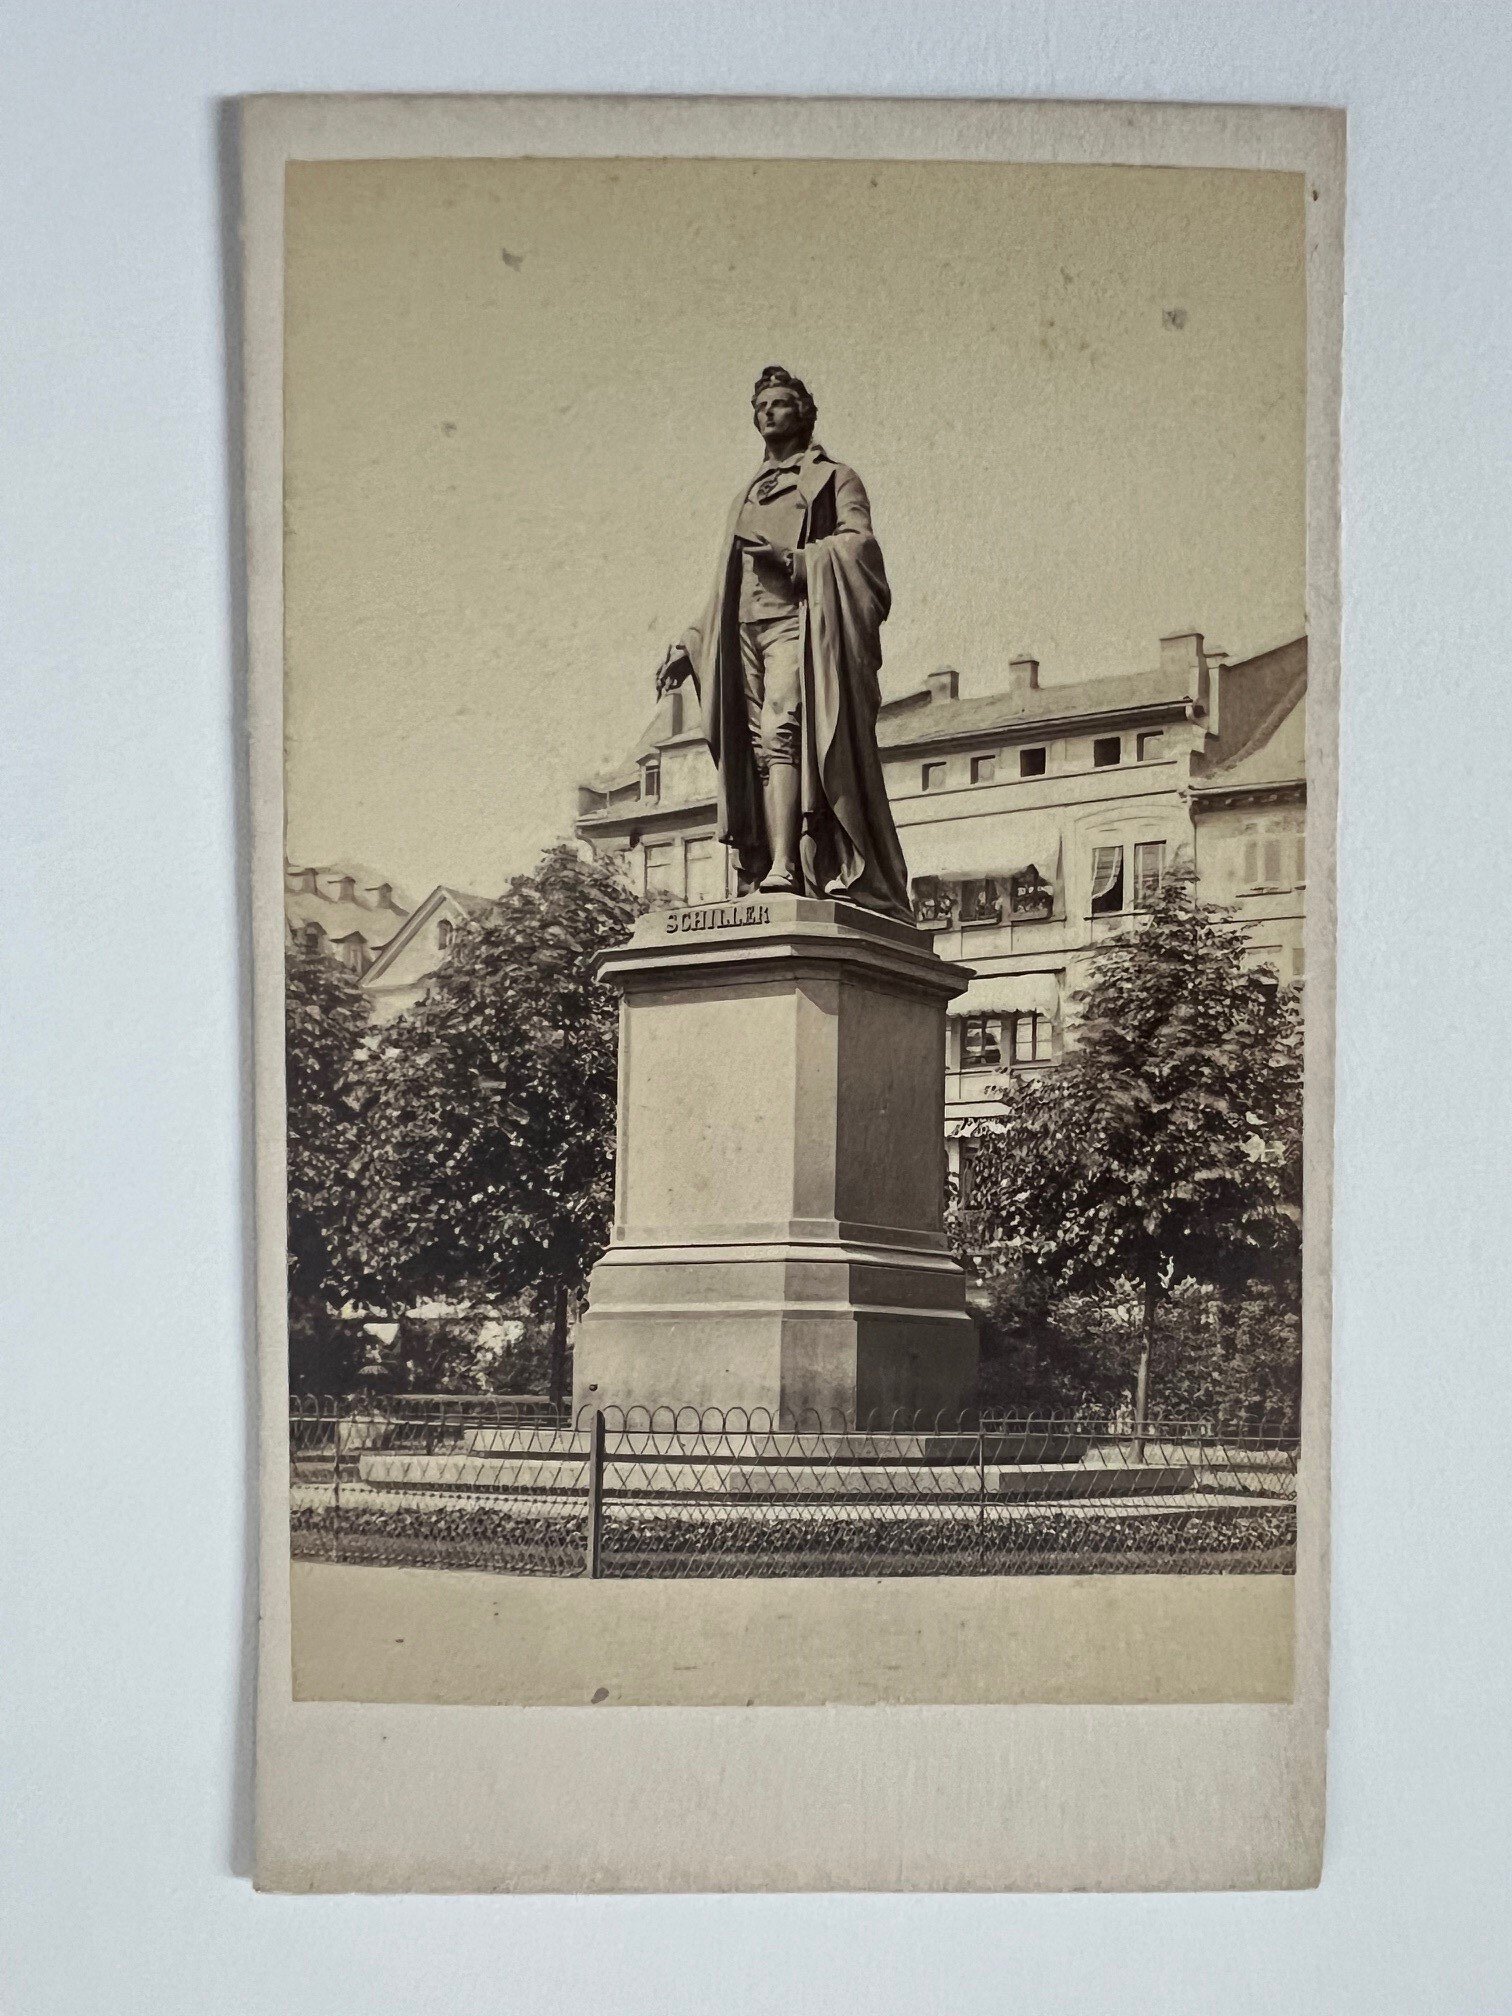 CdV, Theodor Creifelds, Frankfurt, Nr. 266 Schiller-Monument, ca. 1870. (Taunus-Rhein-Main - Regionalgeschichtliche Sammlung Dr. Stefan Naas CC BY-NC-SA)